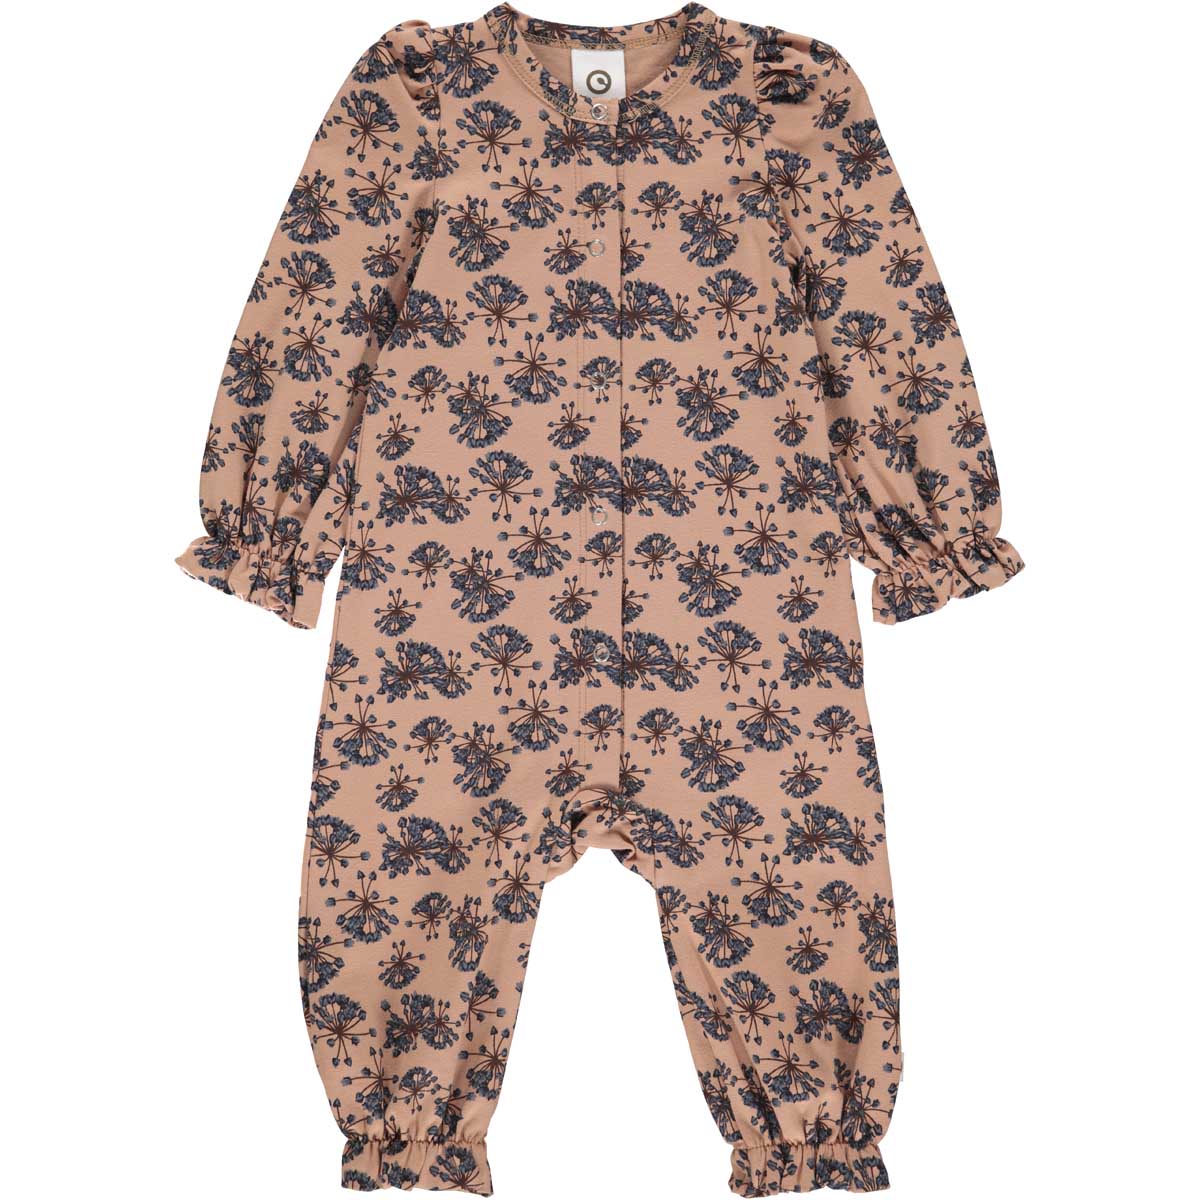 MAMA.LICIOUS Baby one-piece suit -Villa - 1584057100